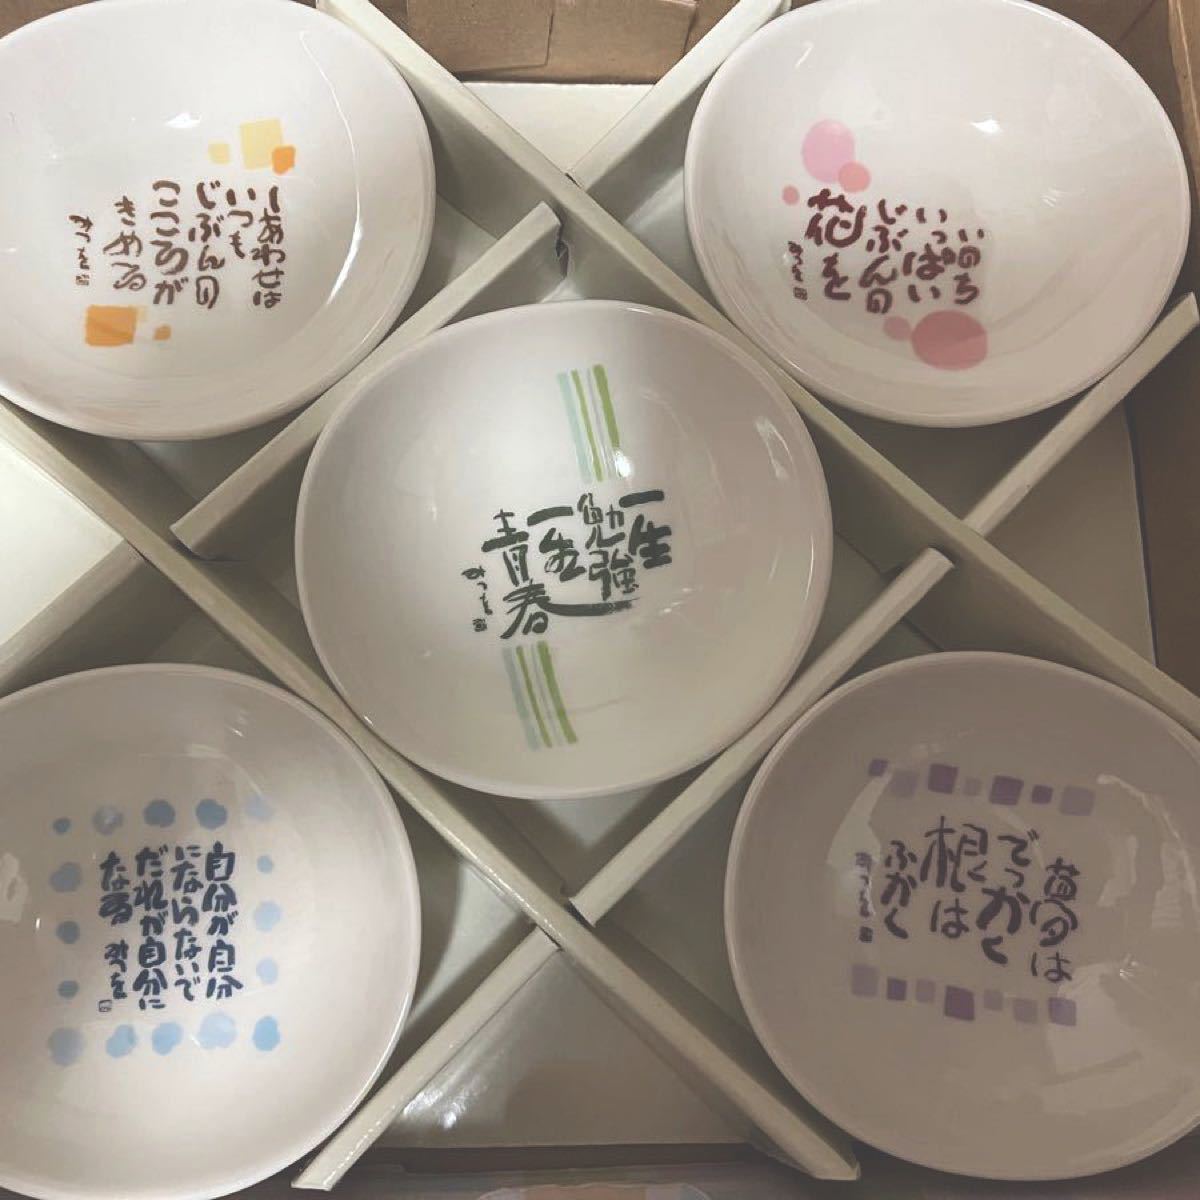 相田みつを名言シリーズ 小鉢5客組陶器セット 未使用 小皿 楕円 ギフトにも